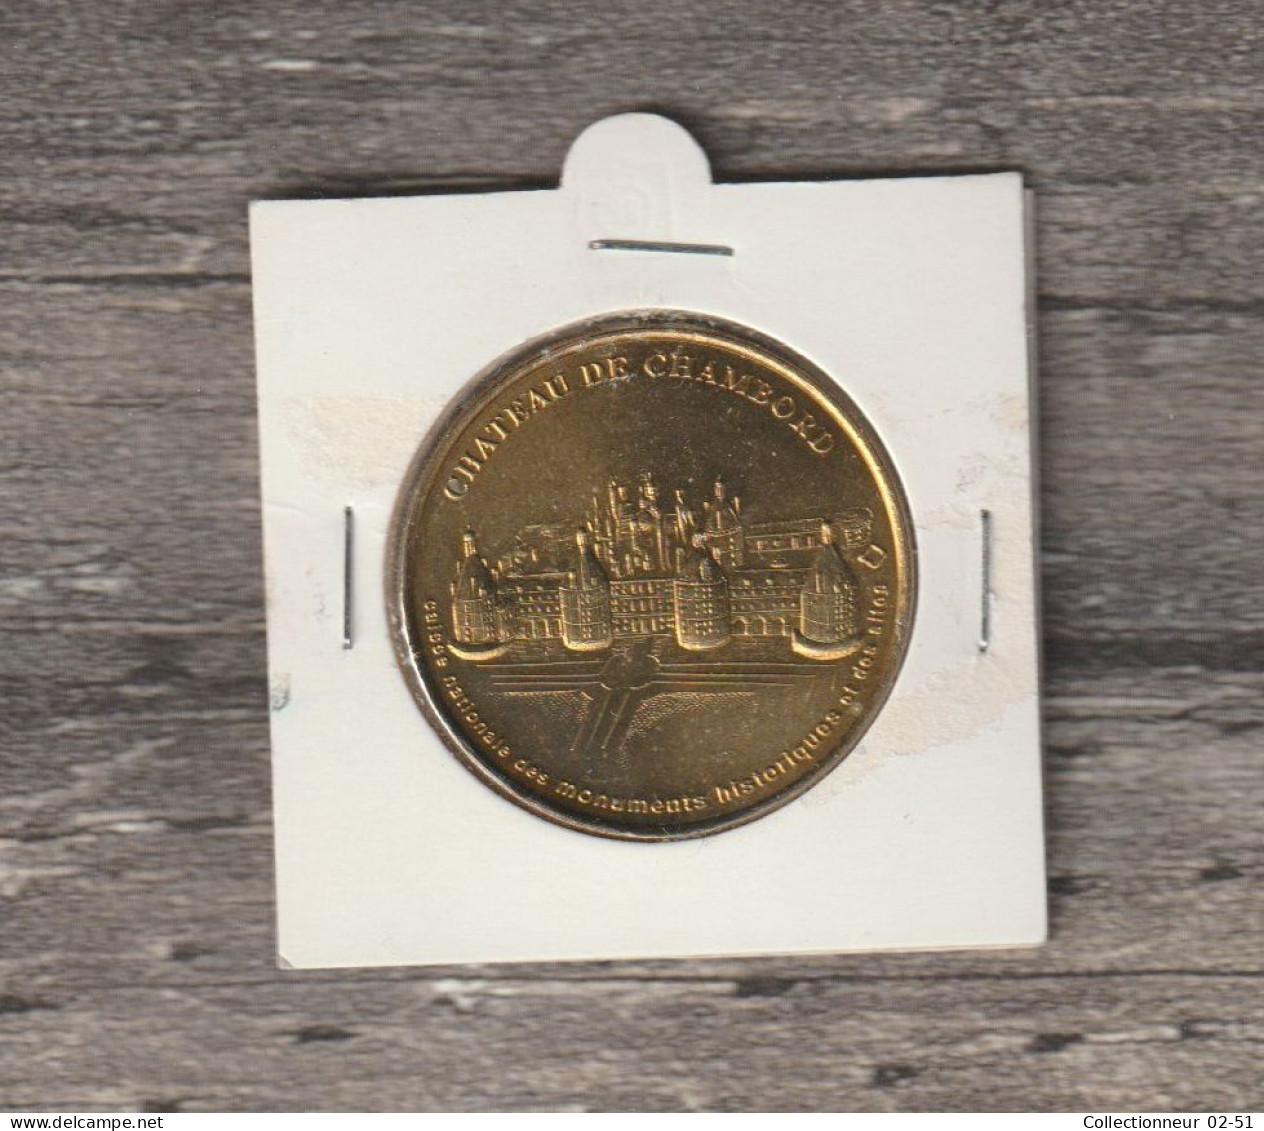 Monnaie De Paris : Château De Chambord - 1999 - Ohne Datum